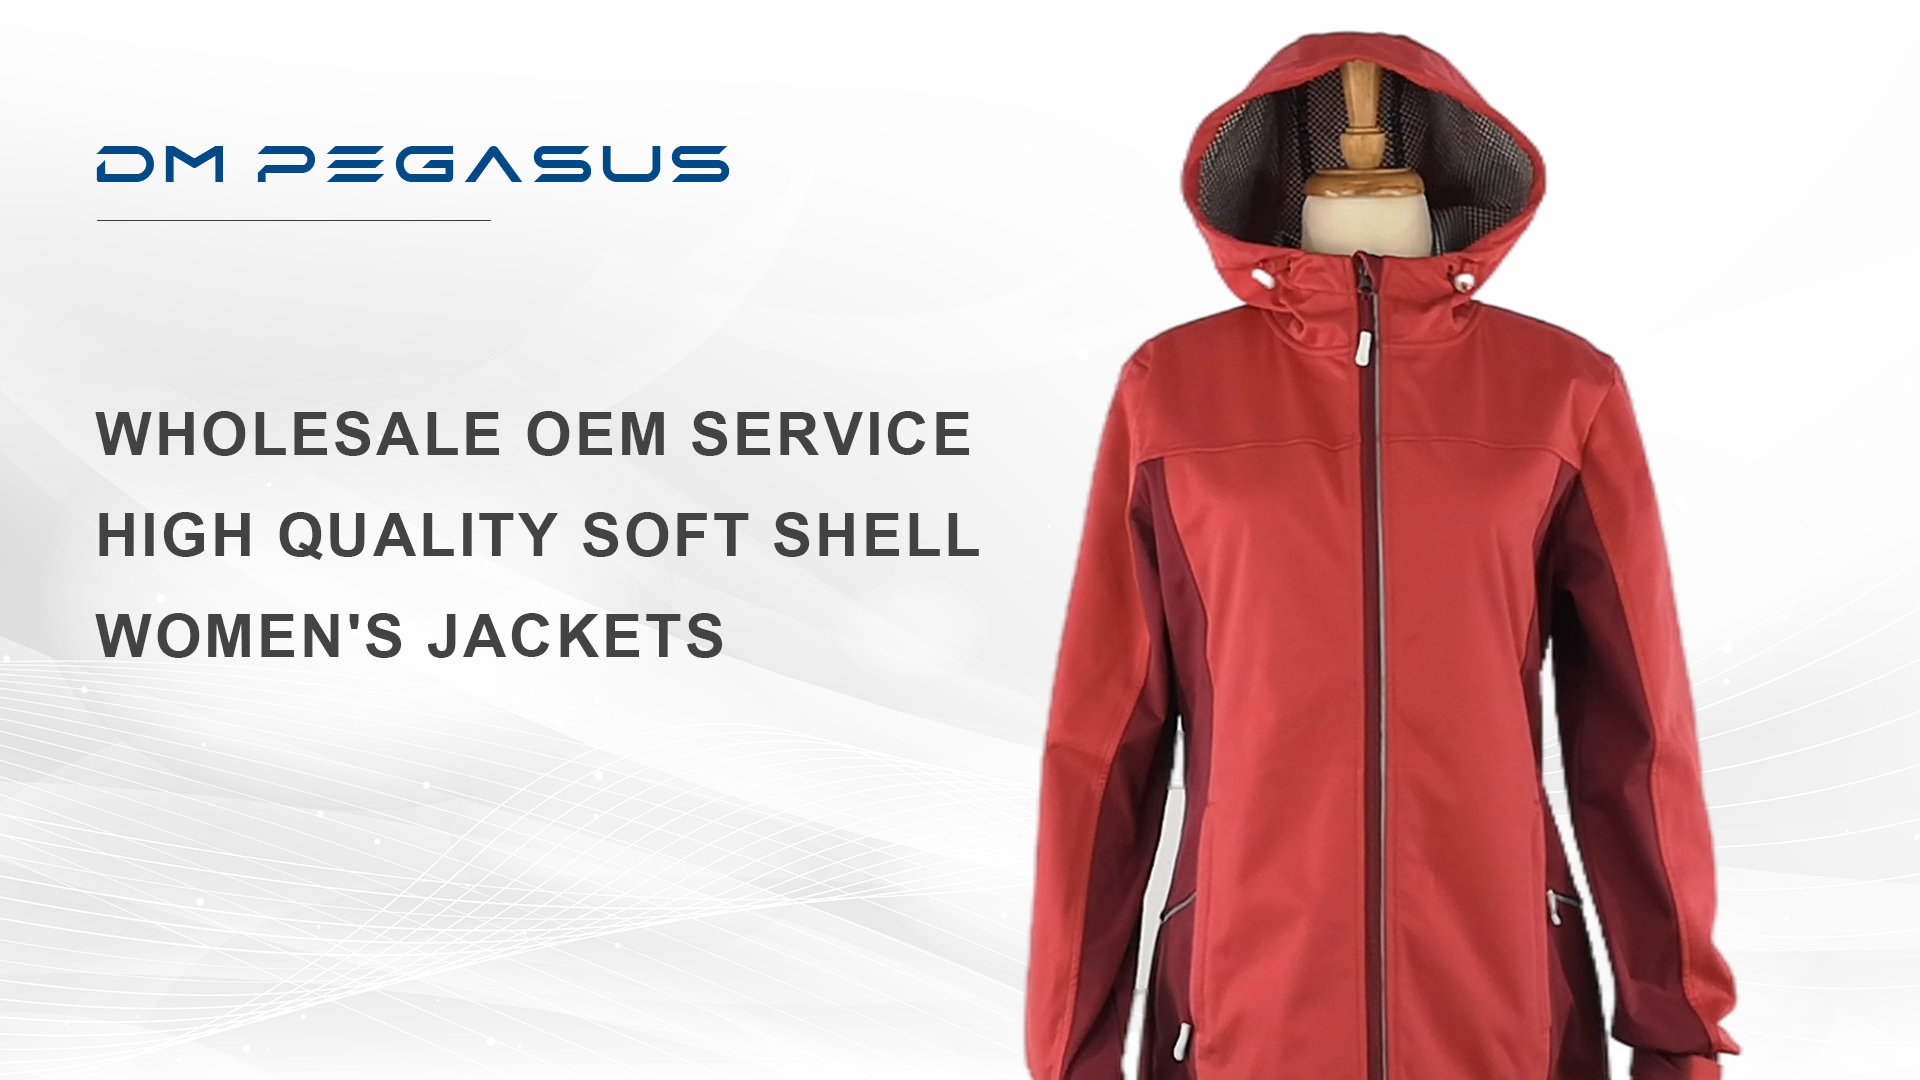 도매 OEM 서비스 고품질 소프트 쉘 여성용 재킷